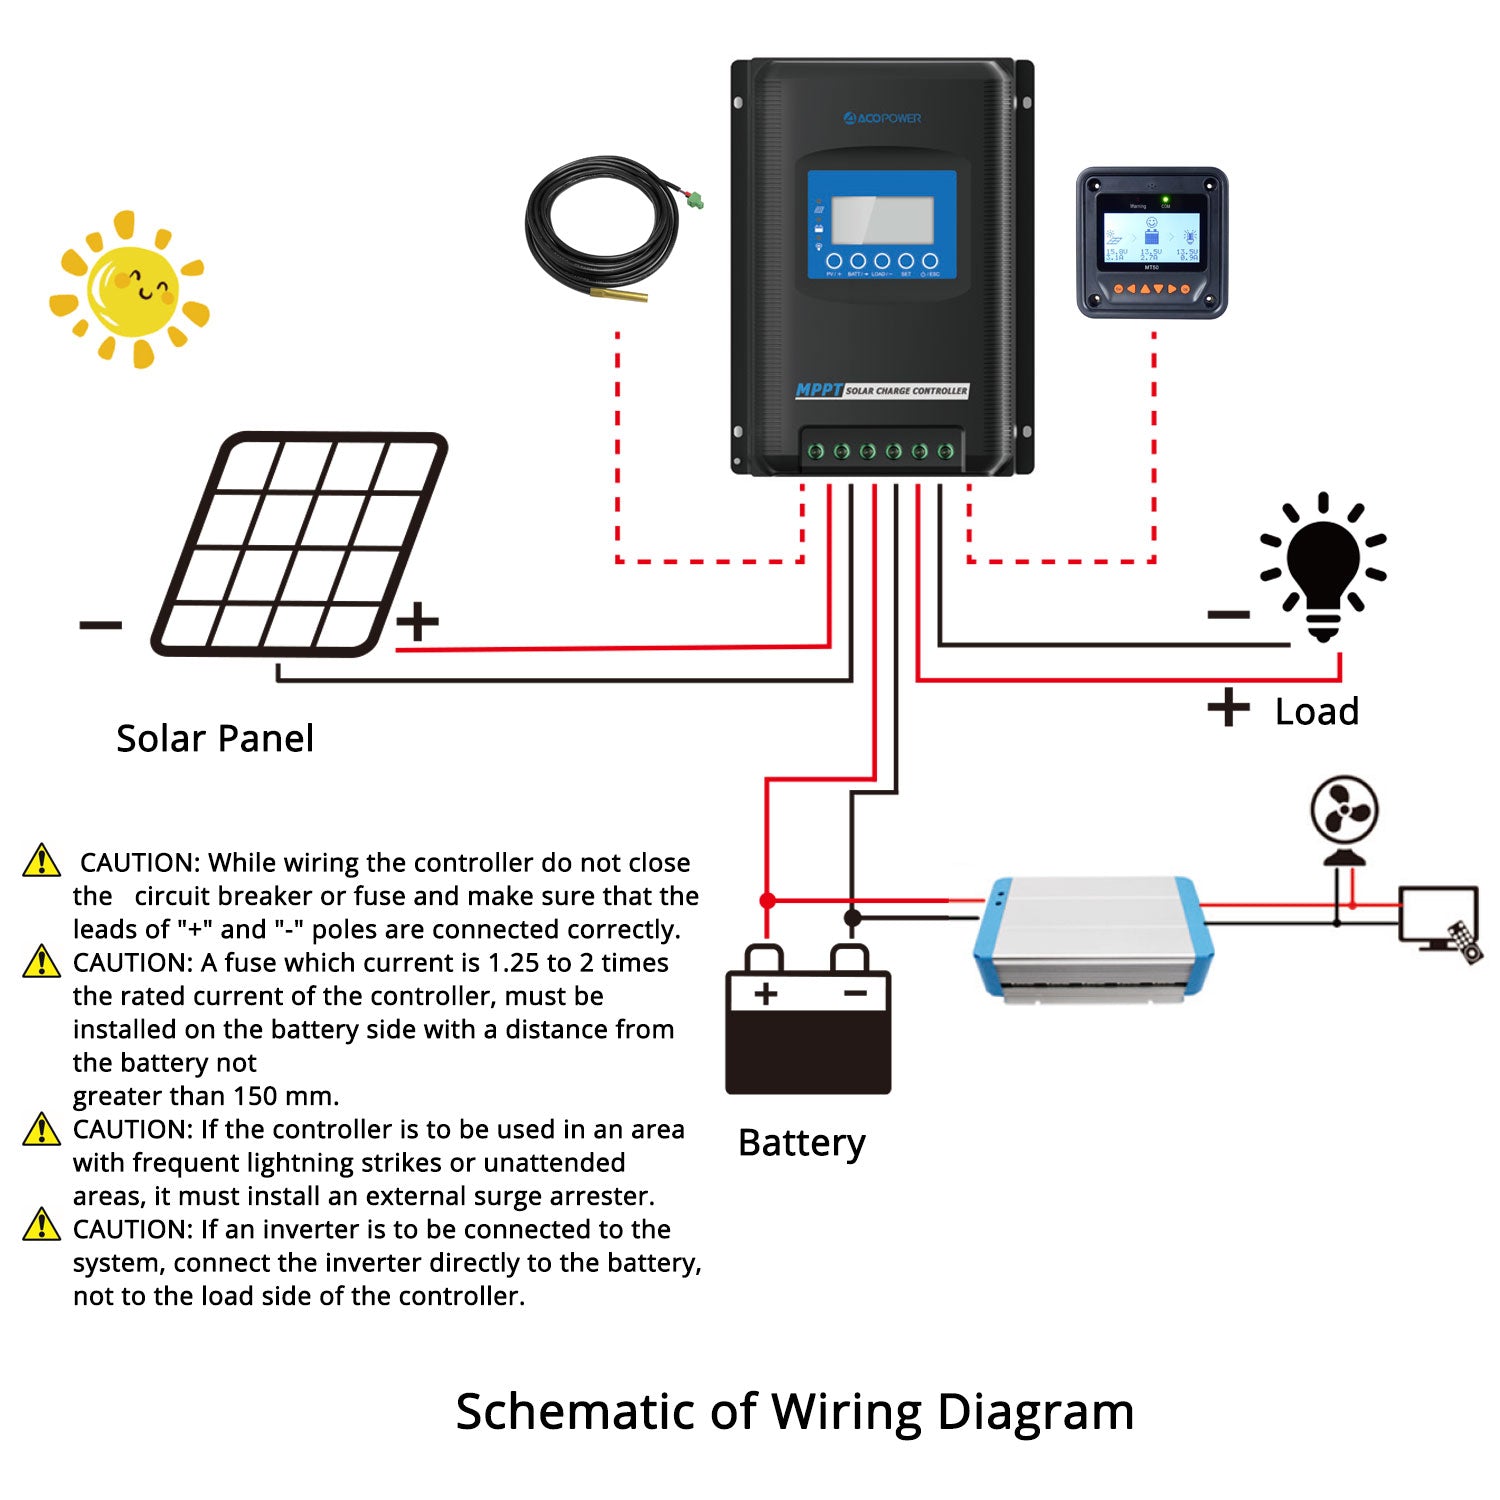 Controlador de carga solar ACOPOWER Midas 40A MPPT con medidor remoto MT-50 (nueva llegada 2020)